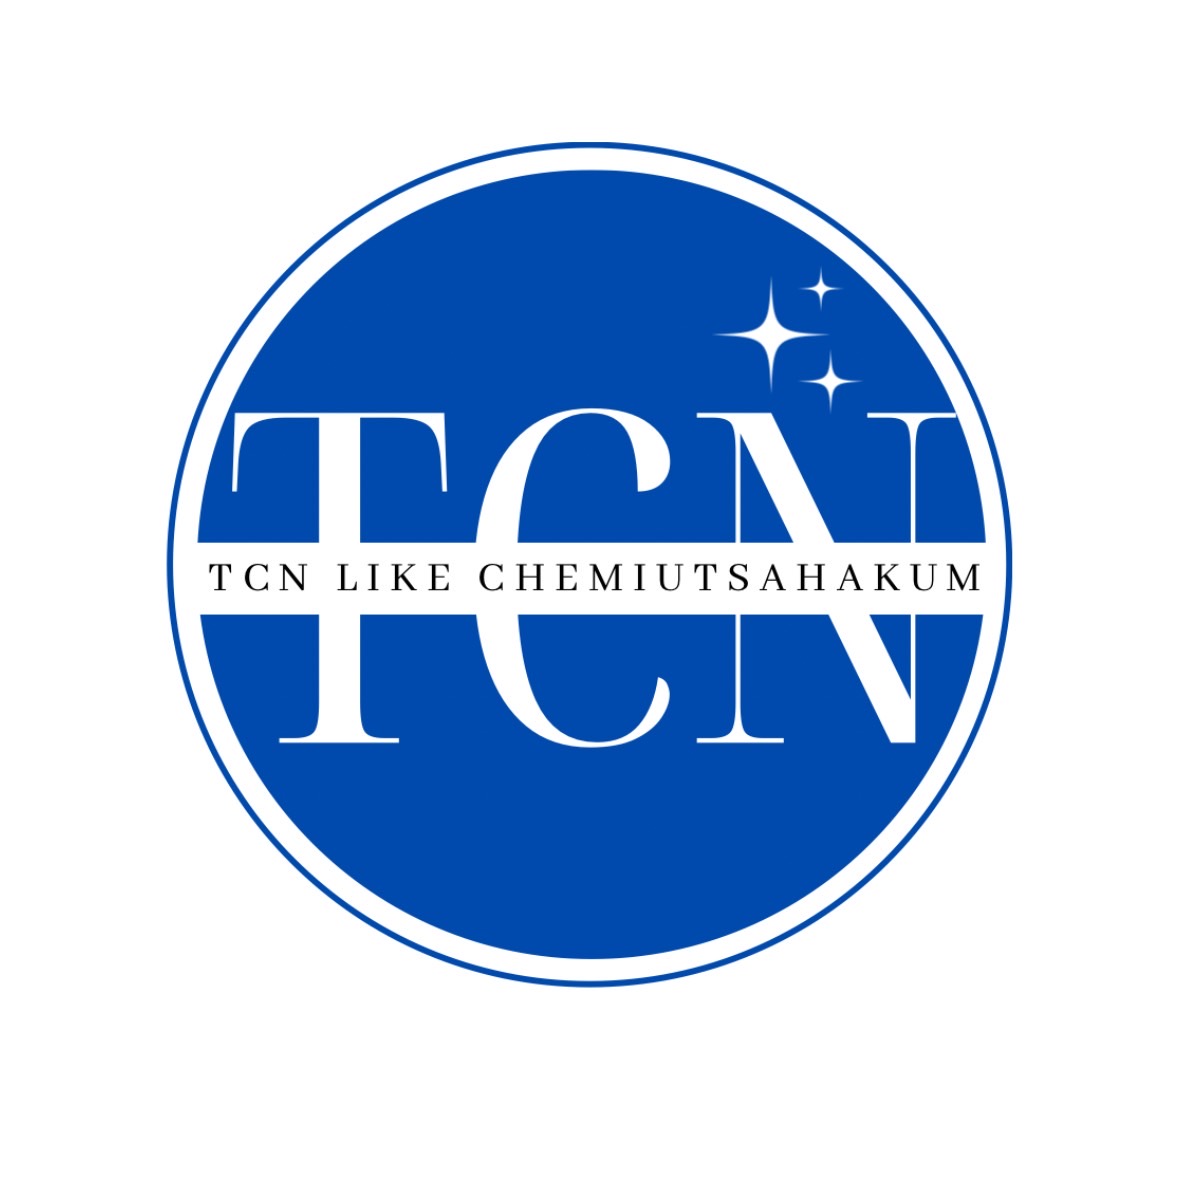 TCN Like Chemiutsahakum Co.,Ltd., บริษัท ทีซีเอ็น ไลค์ เคมีอุตสาหกรรม จำกัด